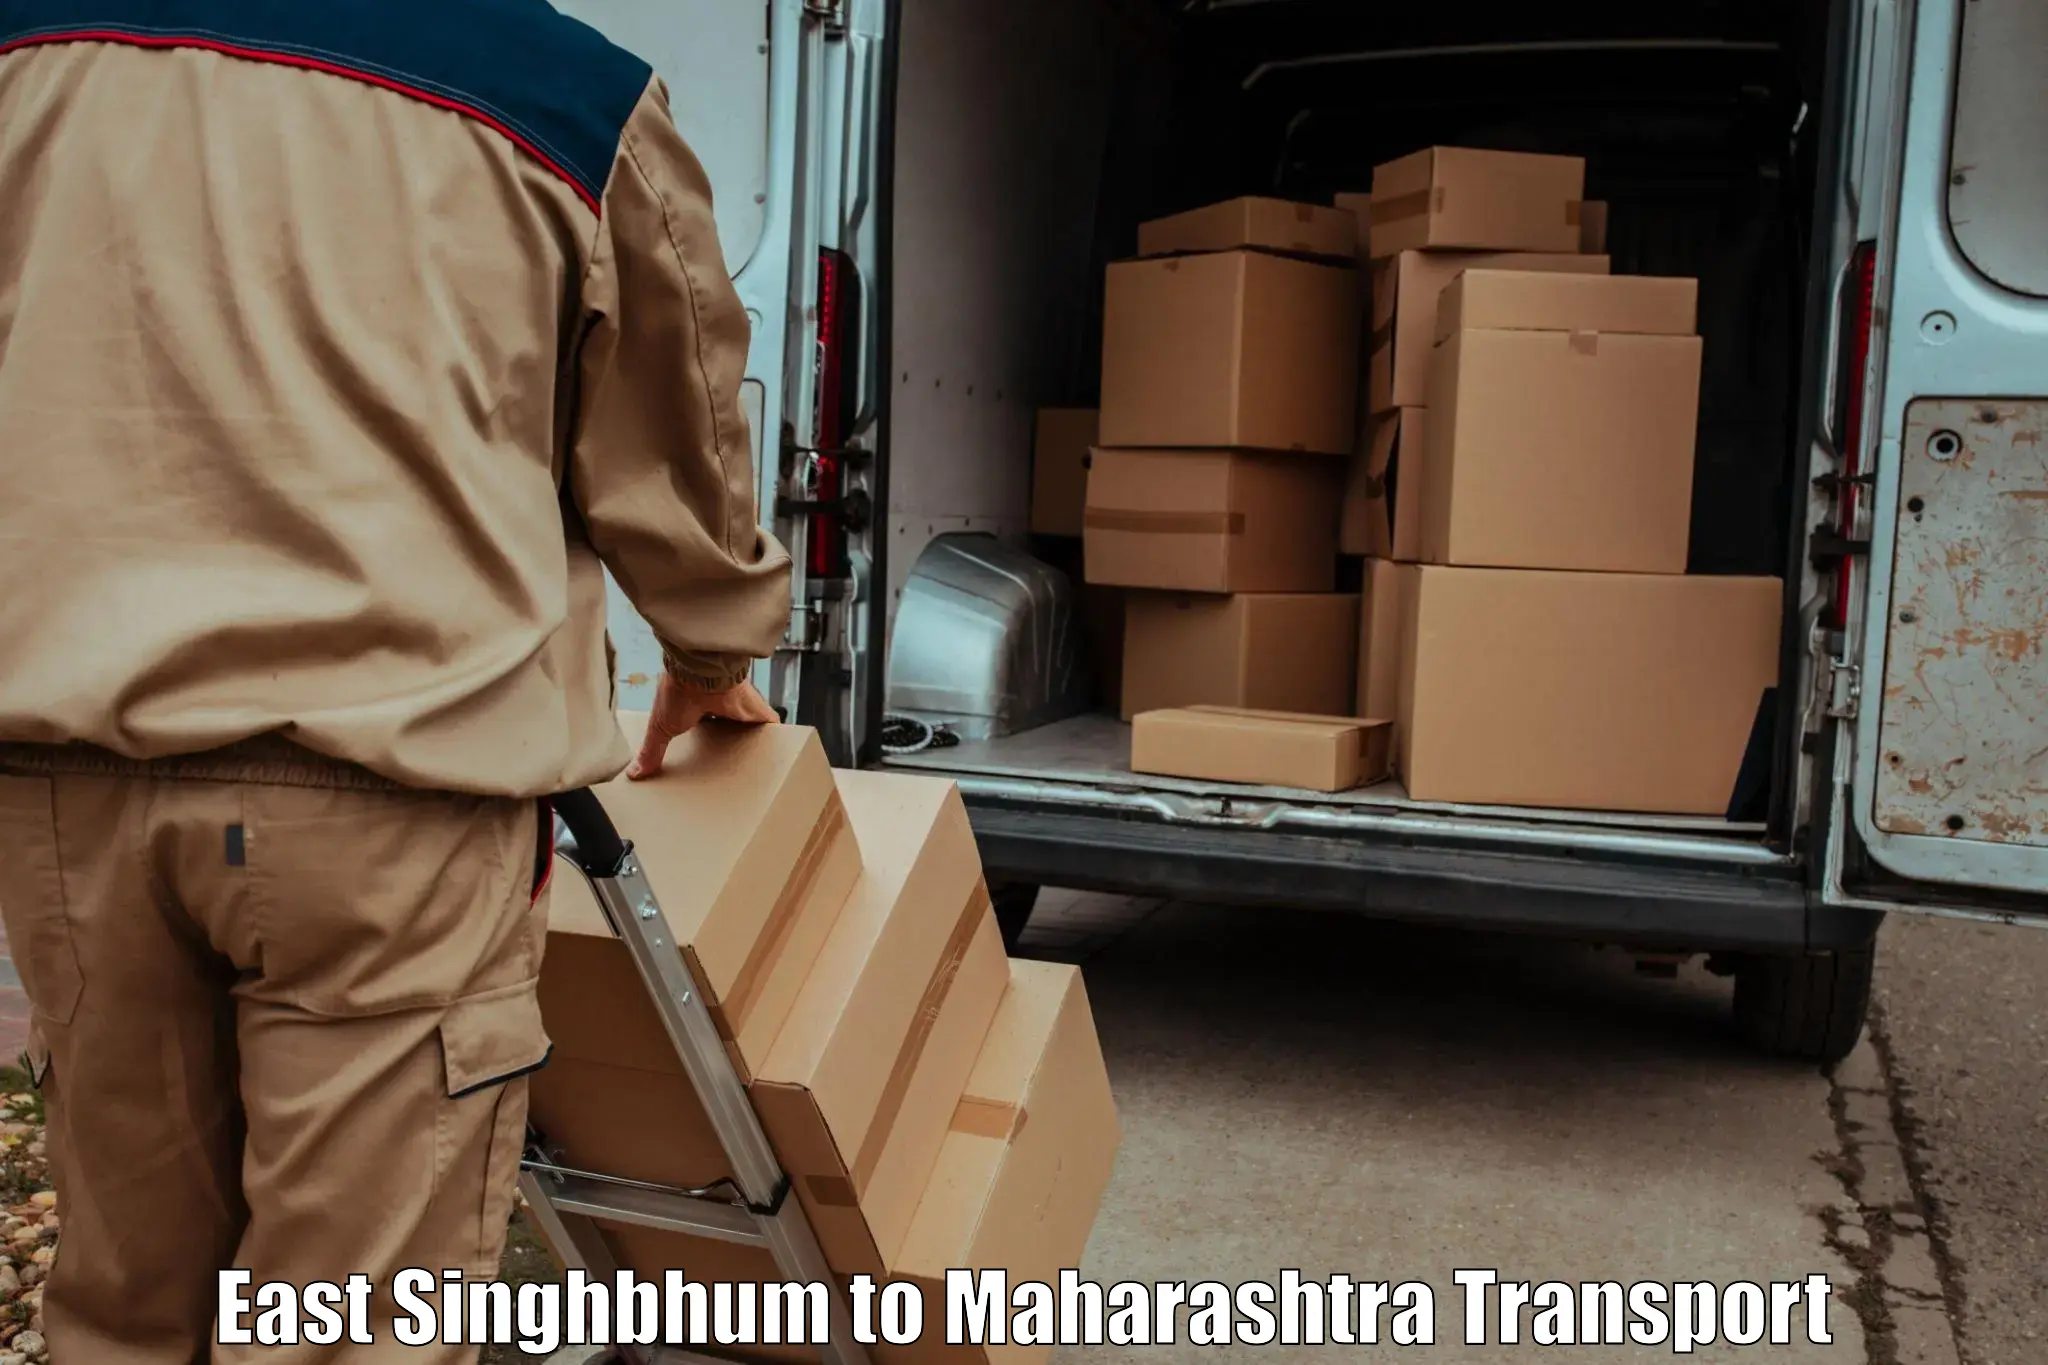 Door to door transport services East Singhbhum to Maharashtra